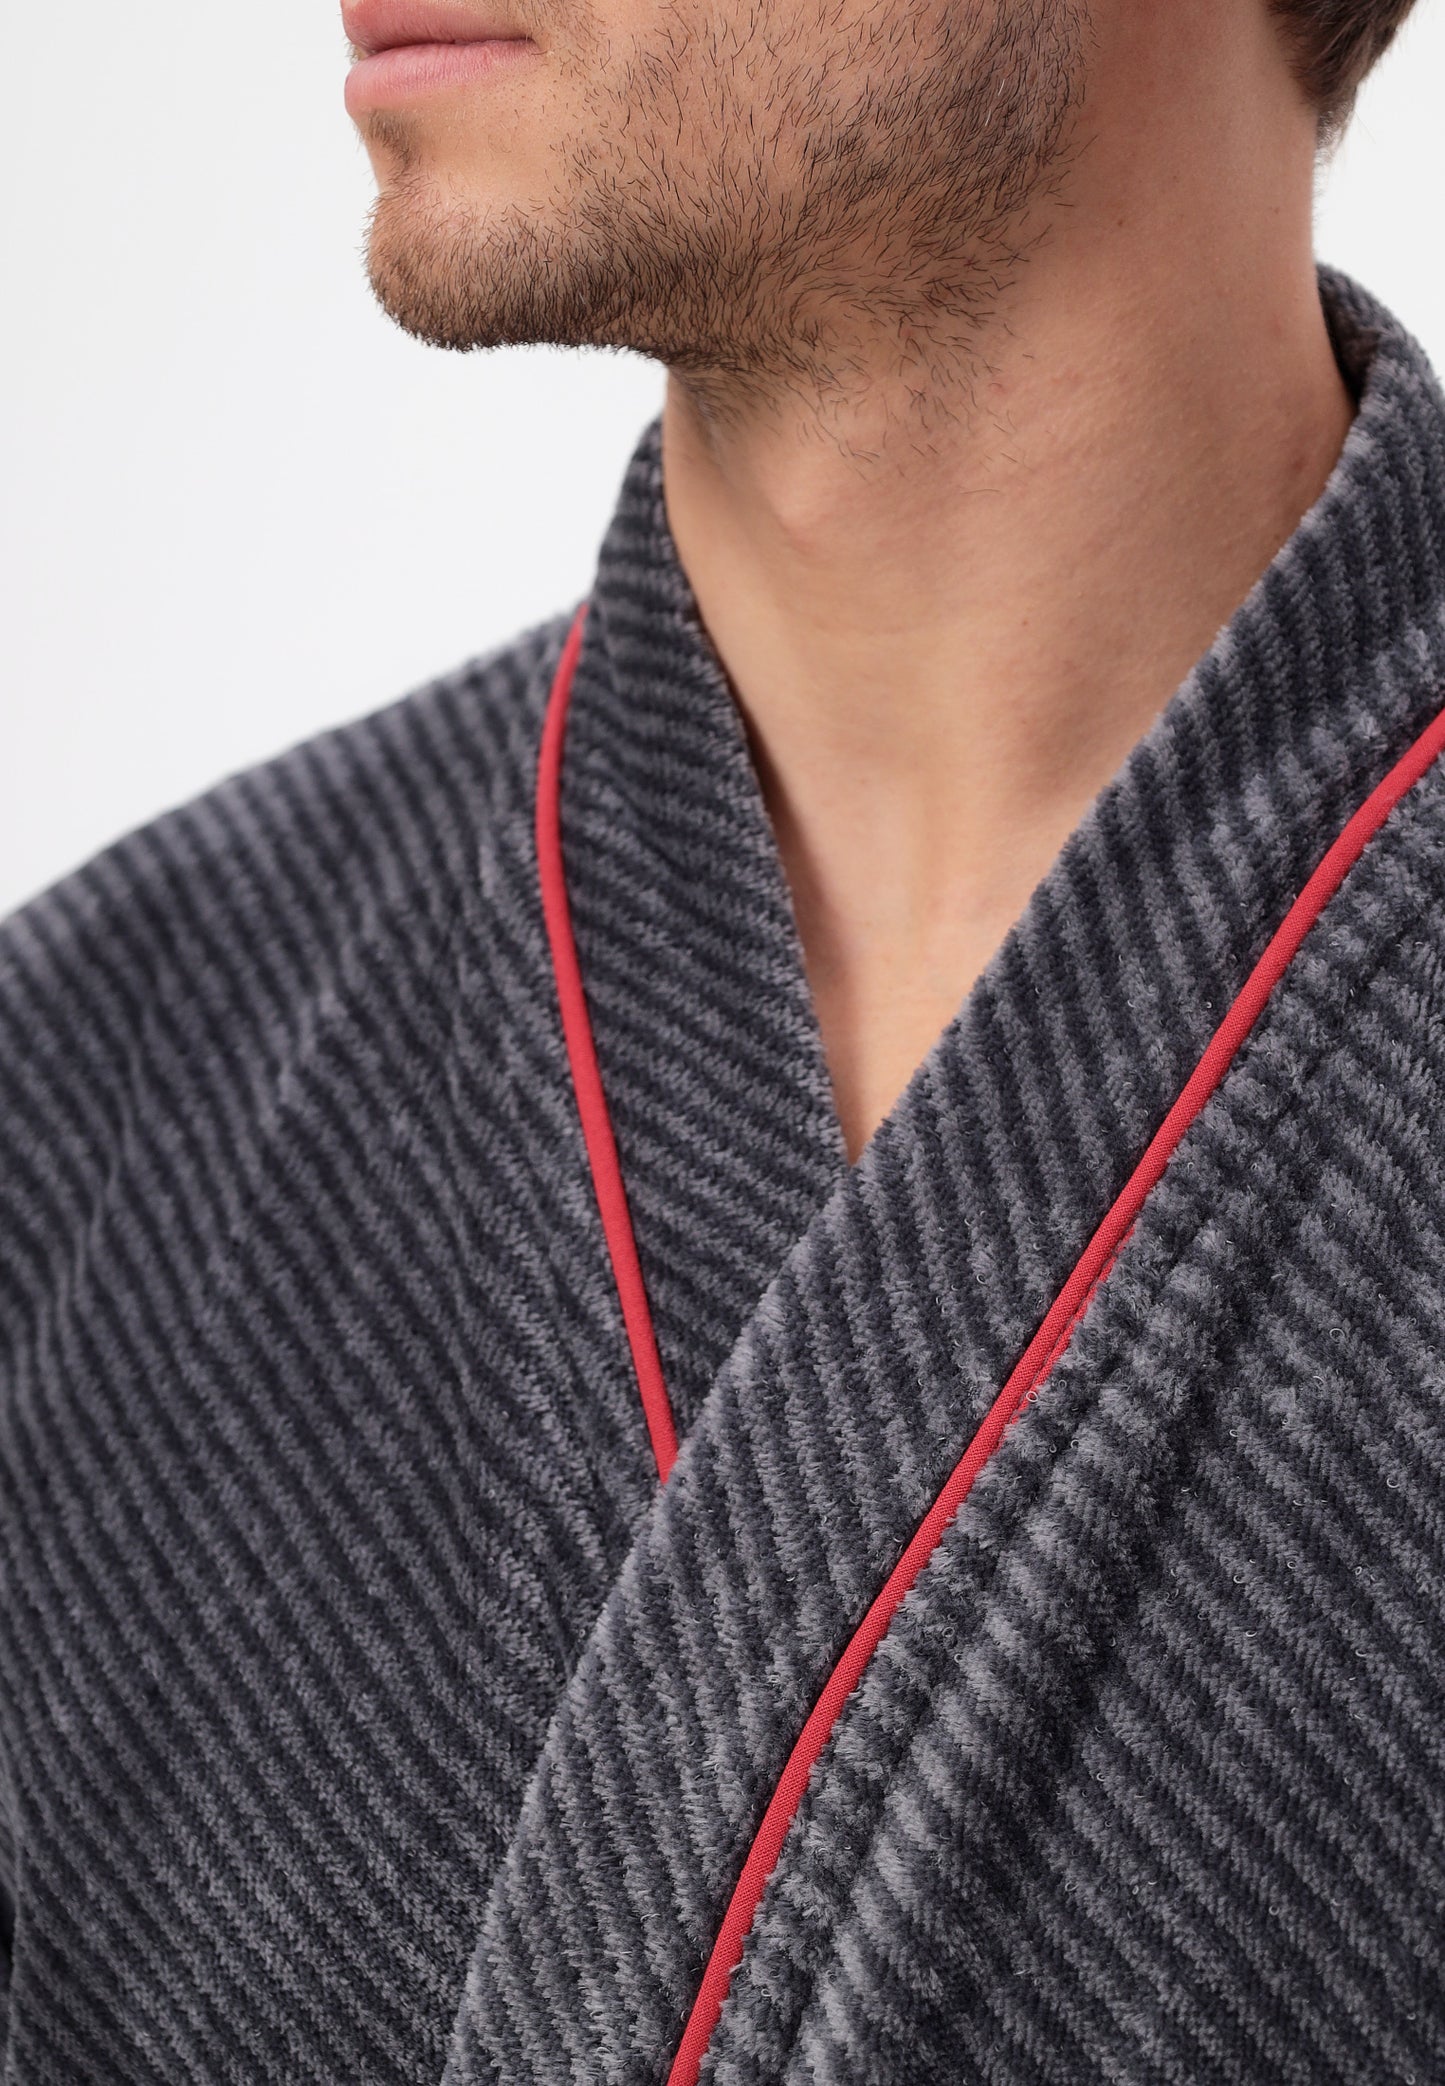 IN ÜBERGRÖSSEN ERHÄLTLICH - Herren Kimono Bademantel aus 100% Baumwolle in melange Diagonel Stripe Design LMS-6471 Anthrazit